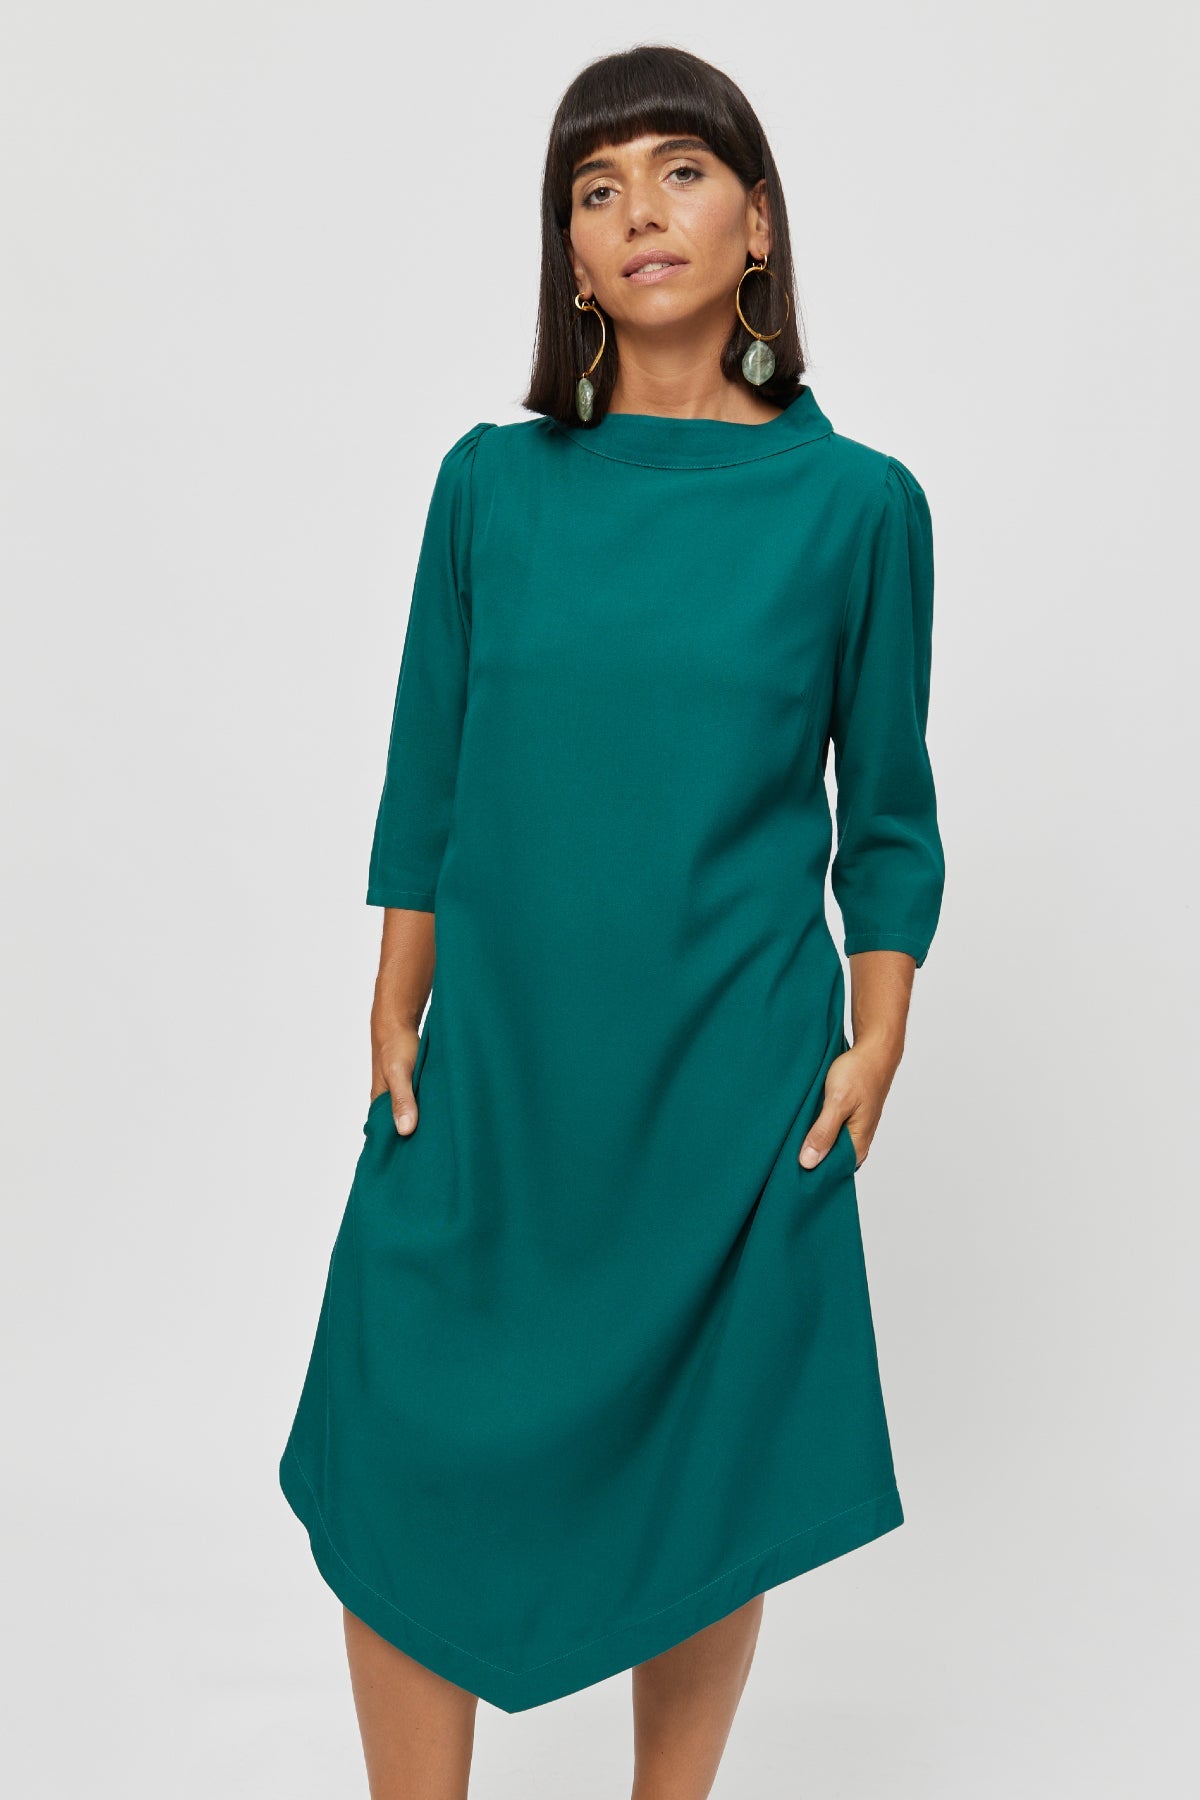 Green dress Suzi made of 100% viscose by Ayani